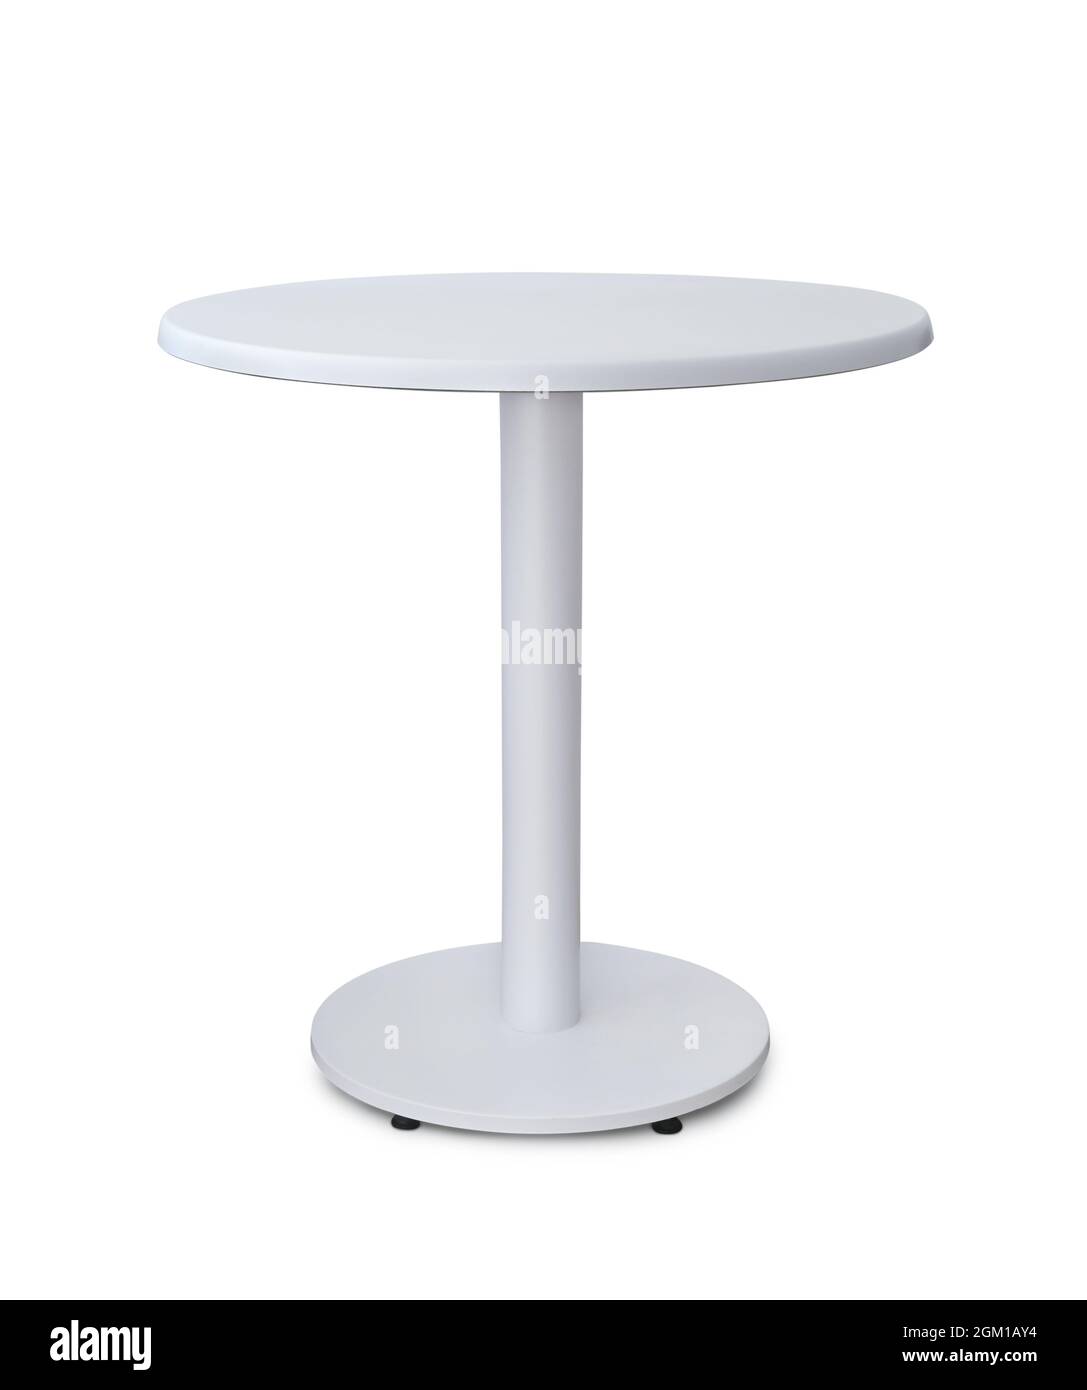 Vorderansicht des weißen runden Tisches isoliert auf Weiß Stockfoto